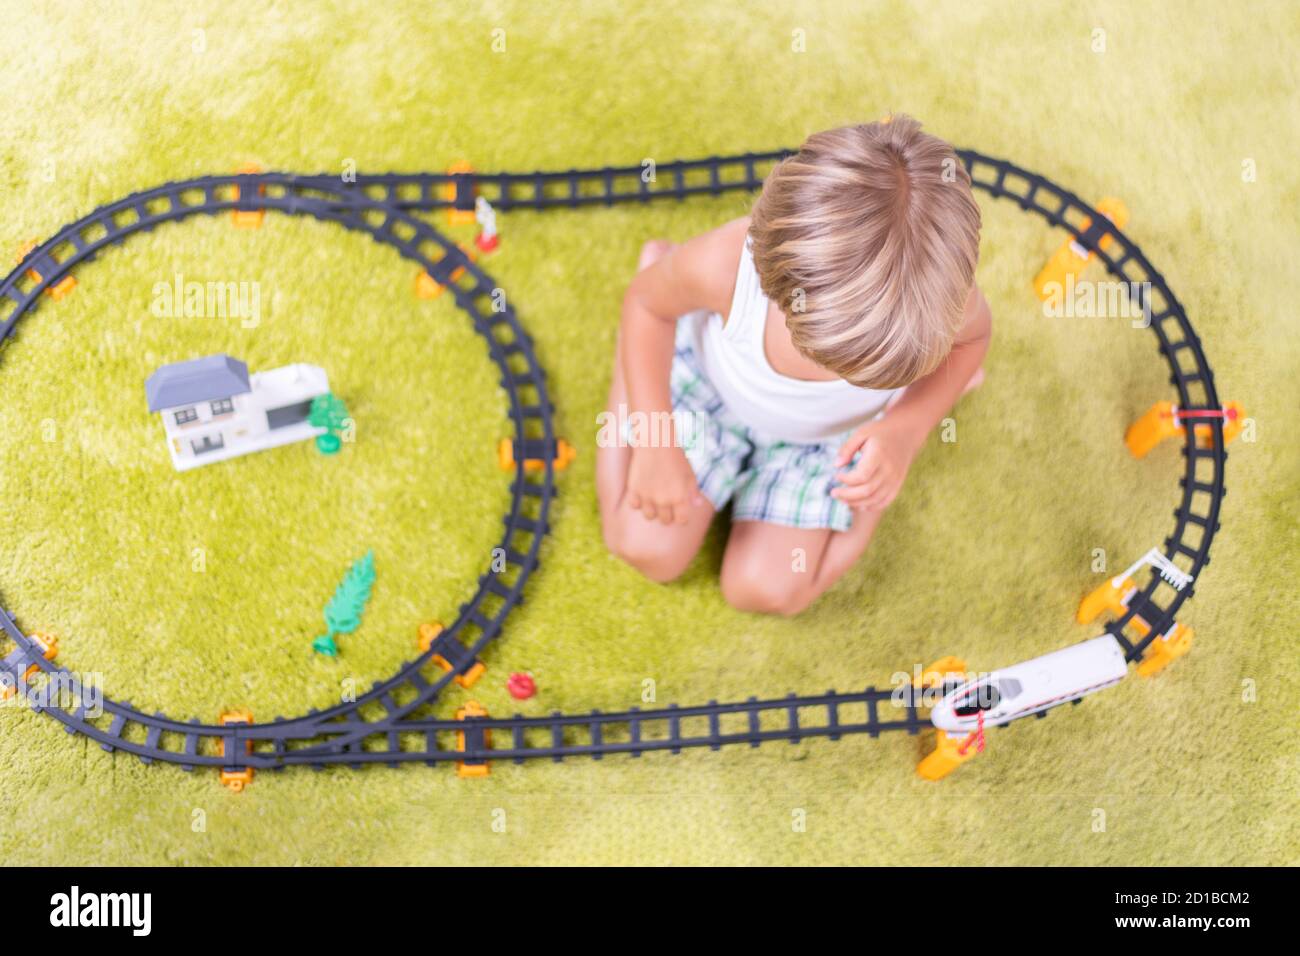 Un petit garçon joue avec un chemin de fer en plastique. Enfant avec train jouet. Jouets éducatifs pour les jeunes enfants. Petit garçon construisant des voies de chemin de fer sur un tapis vert. Banque D'Images